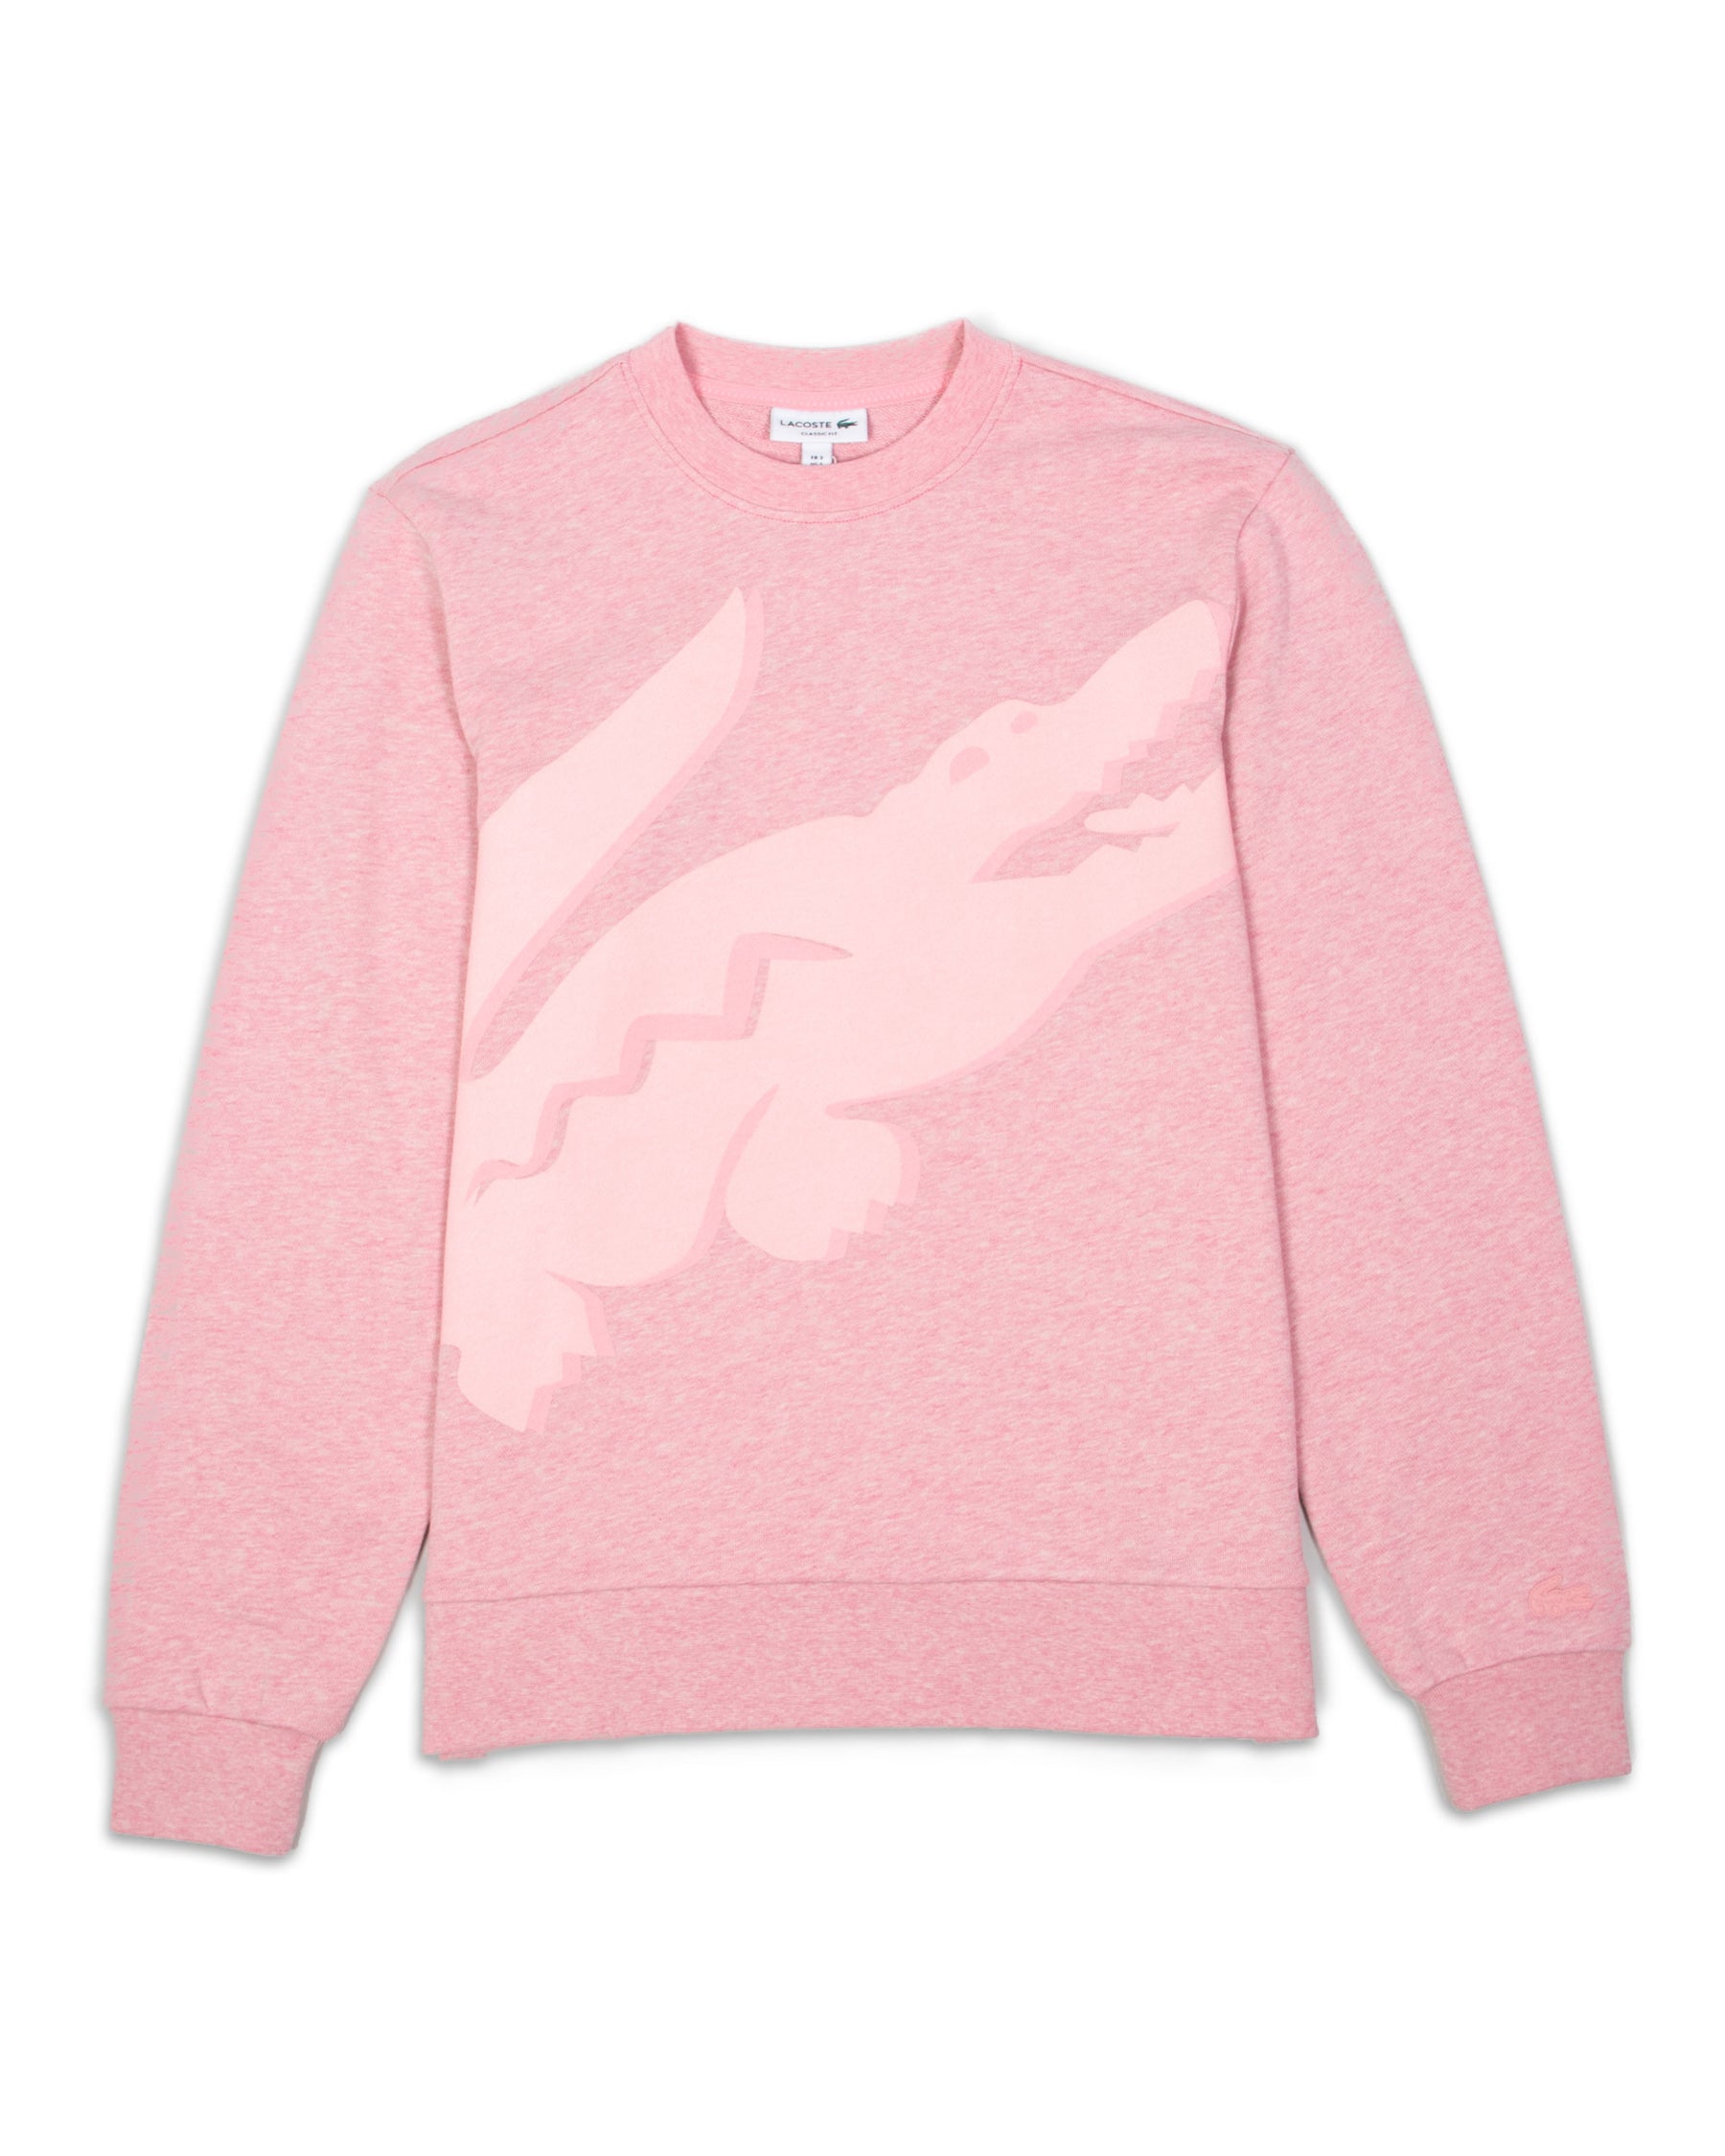 Lacoste Sweatshirt Pink Logo Big